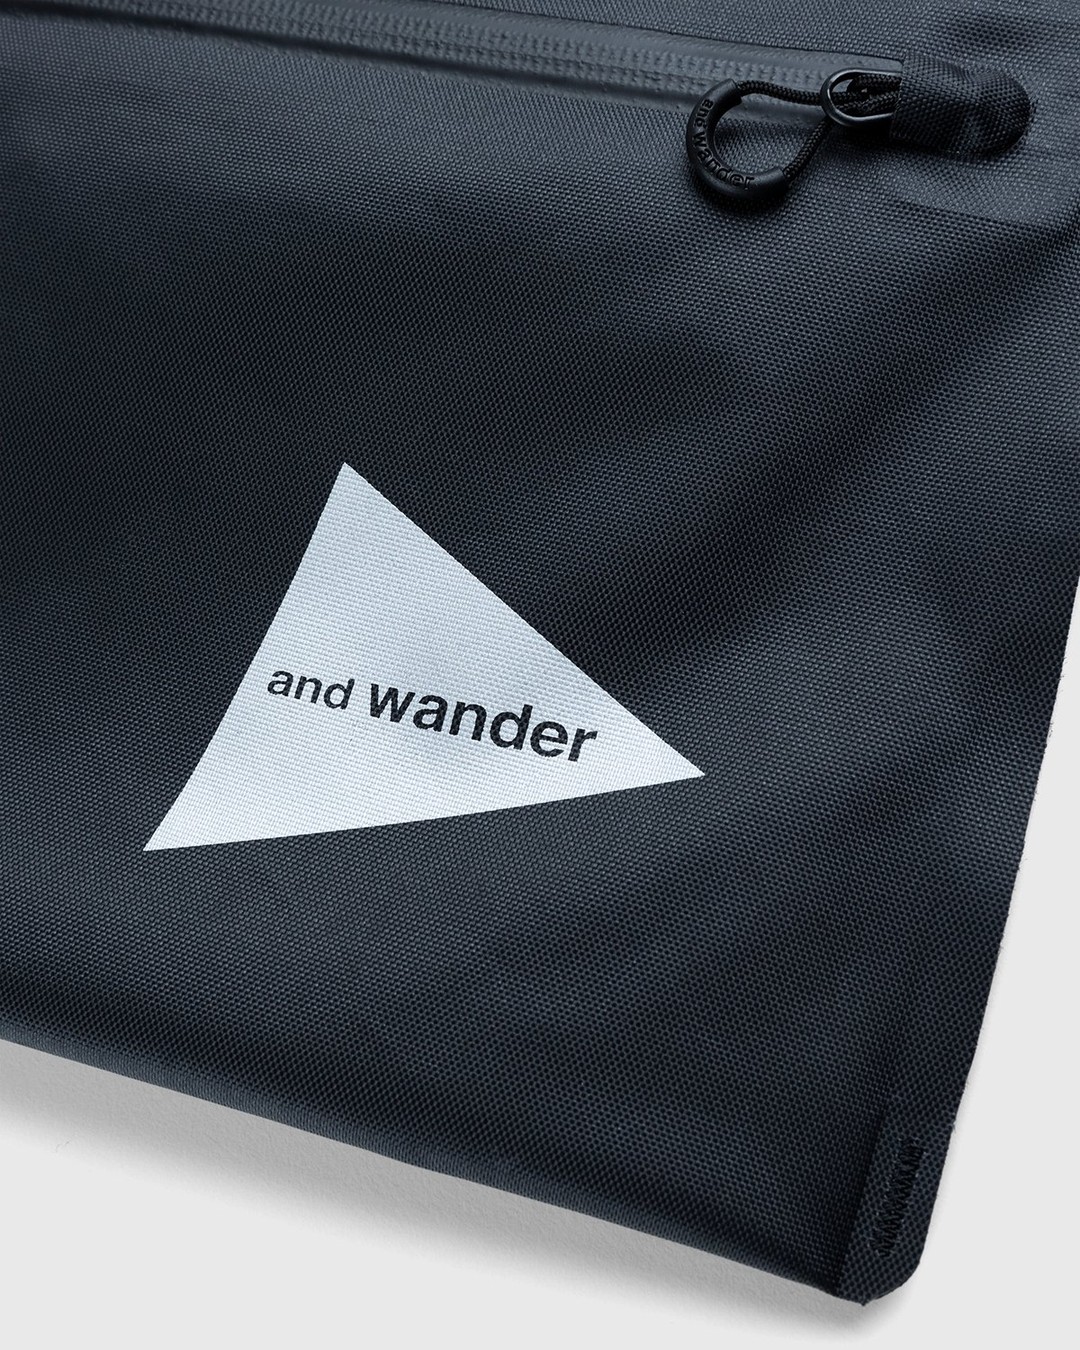 And Wander – Waterproof Satchel Black - Bags - Black - Image 3